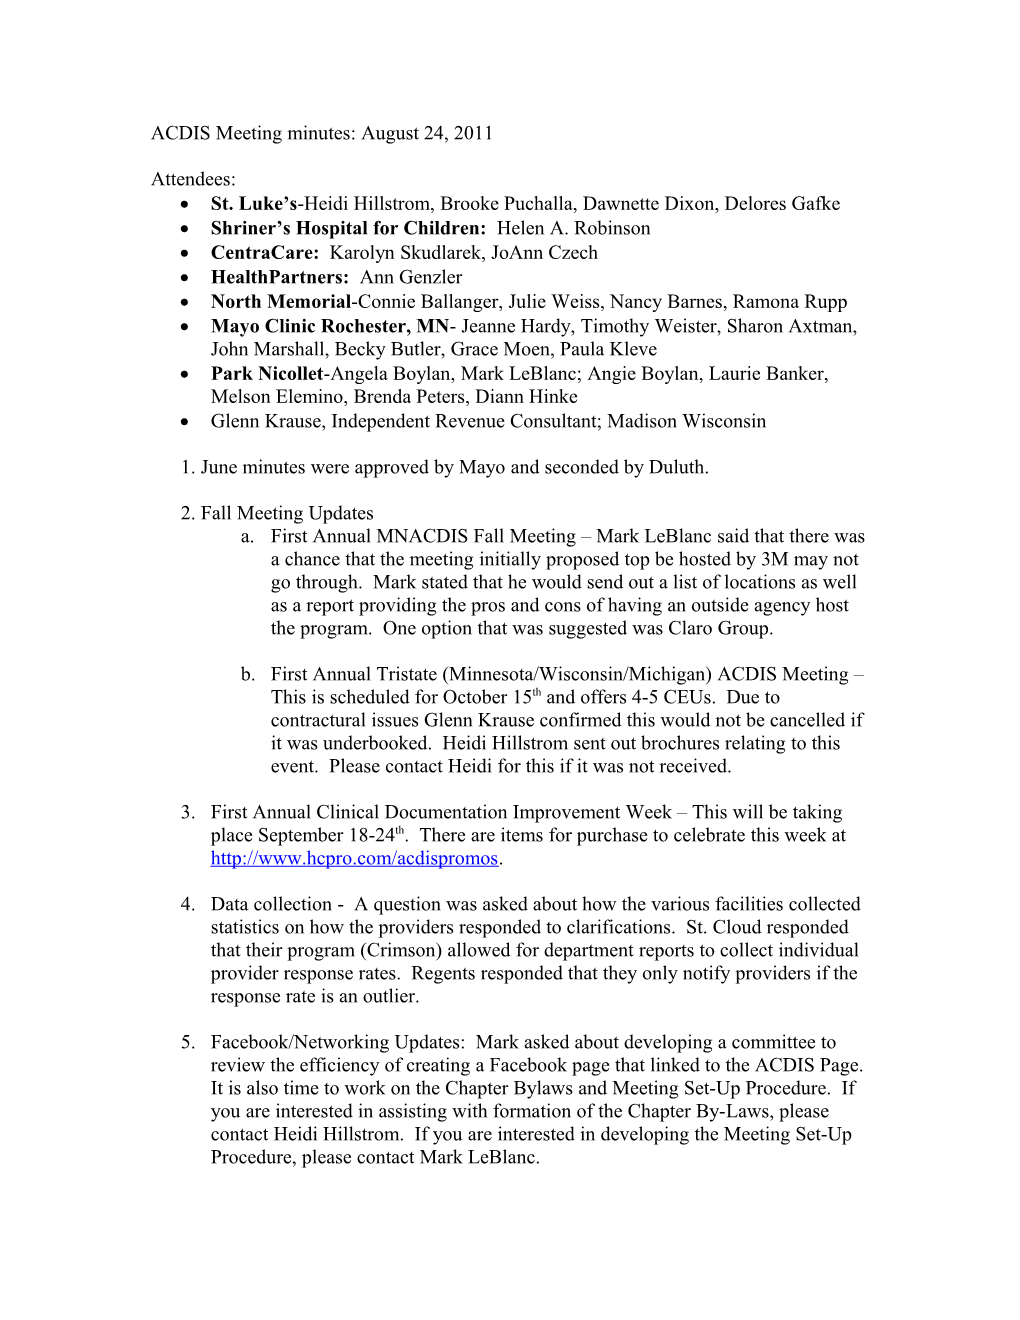 ACDIS Meeting Minutes: June 22, 2011